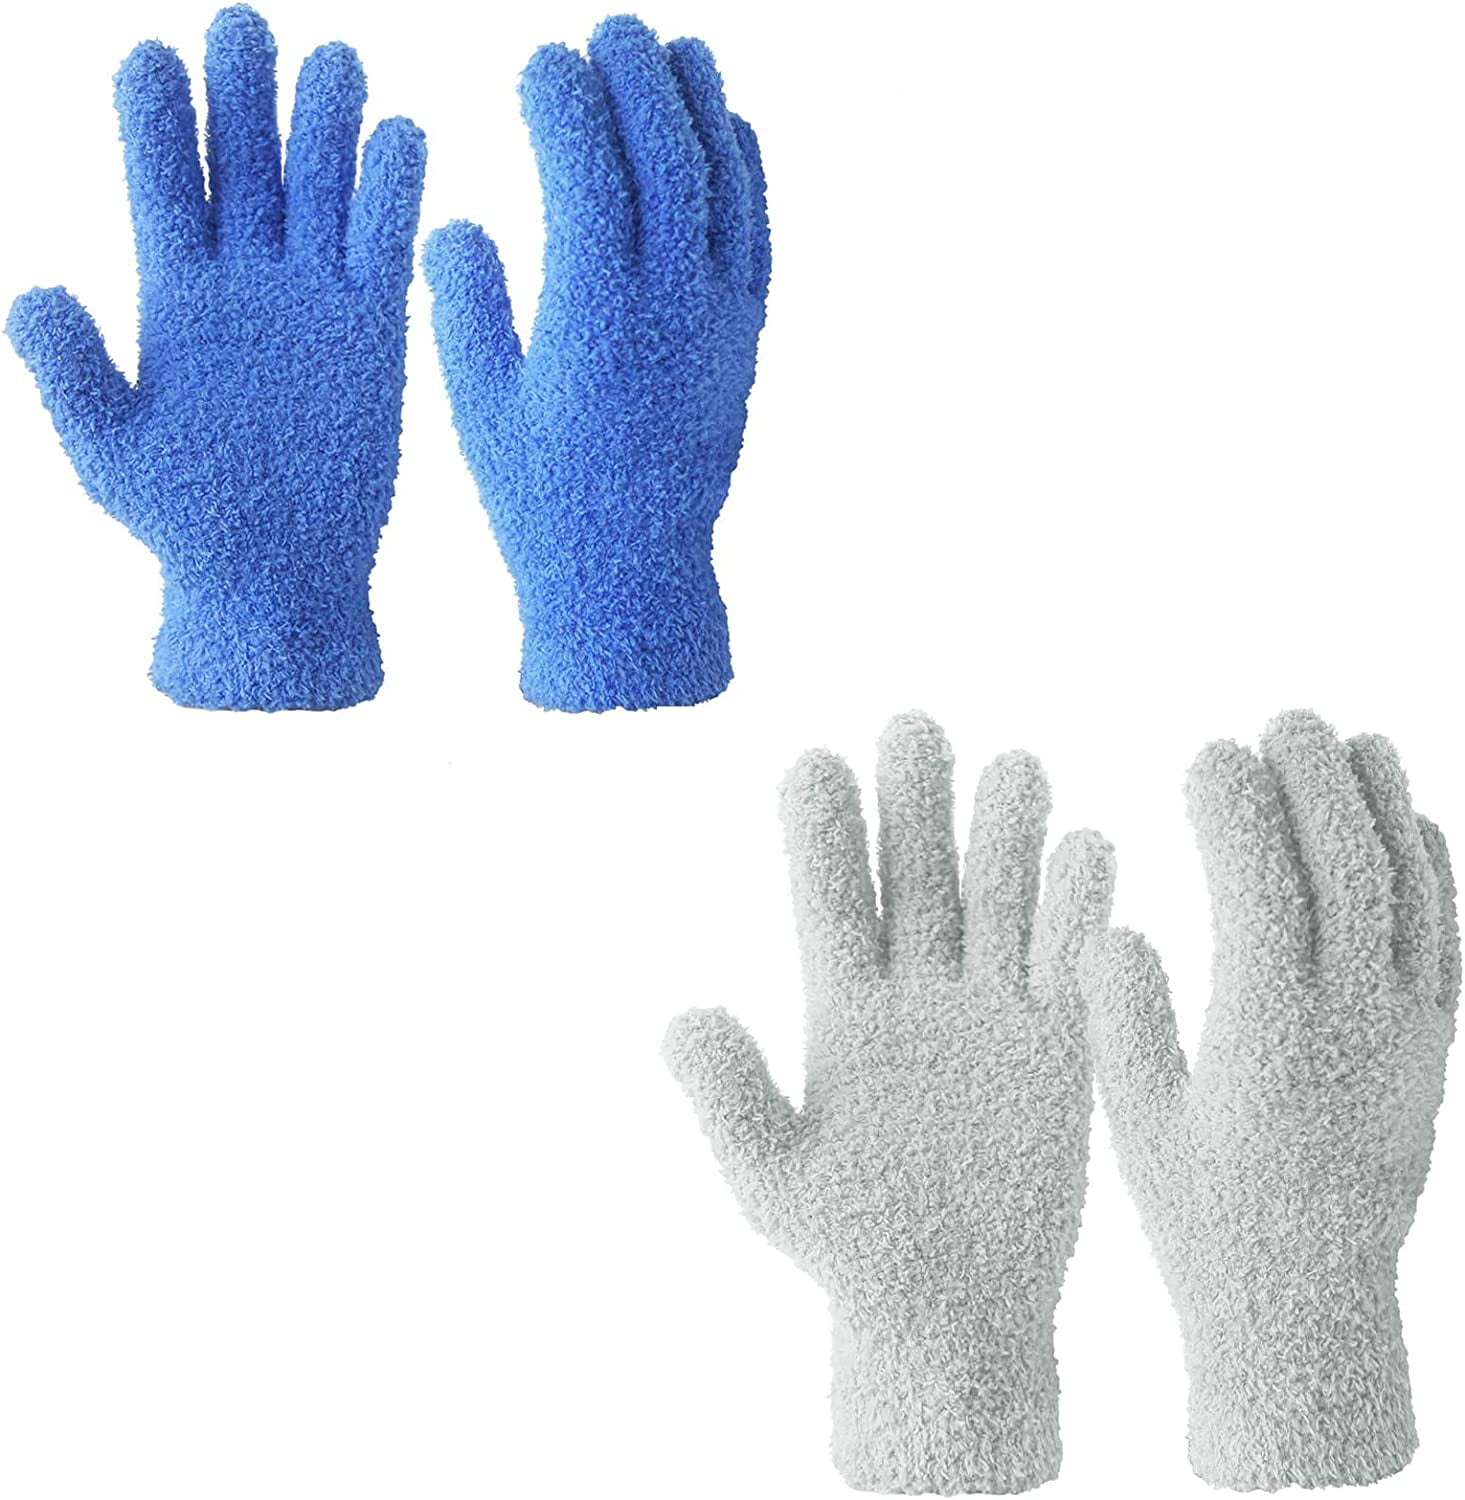  Bencailor 6 Pairs Microfiber Dusting Gloves, Dusting Cleaning  Gloves Microfiber Gloves for Plants House Blinds Car Dust Mitt (Vibrant  Color) : Health & Household